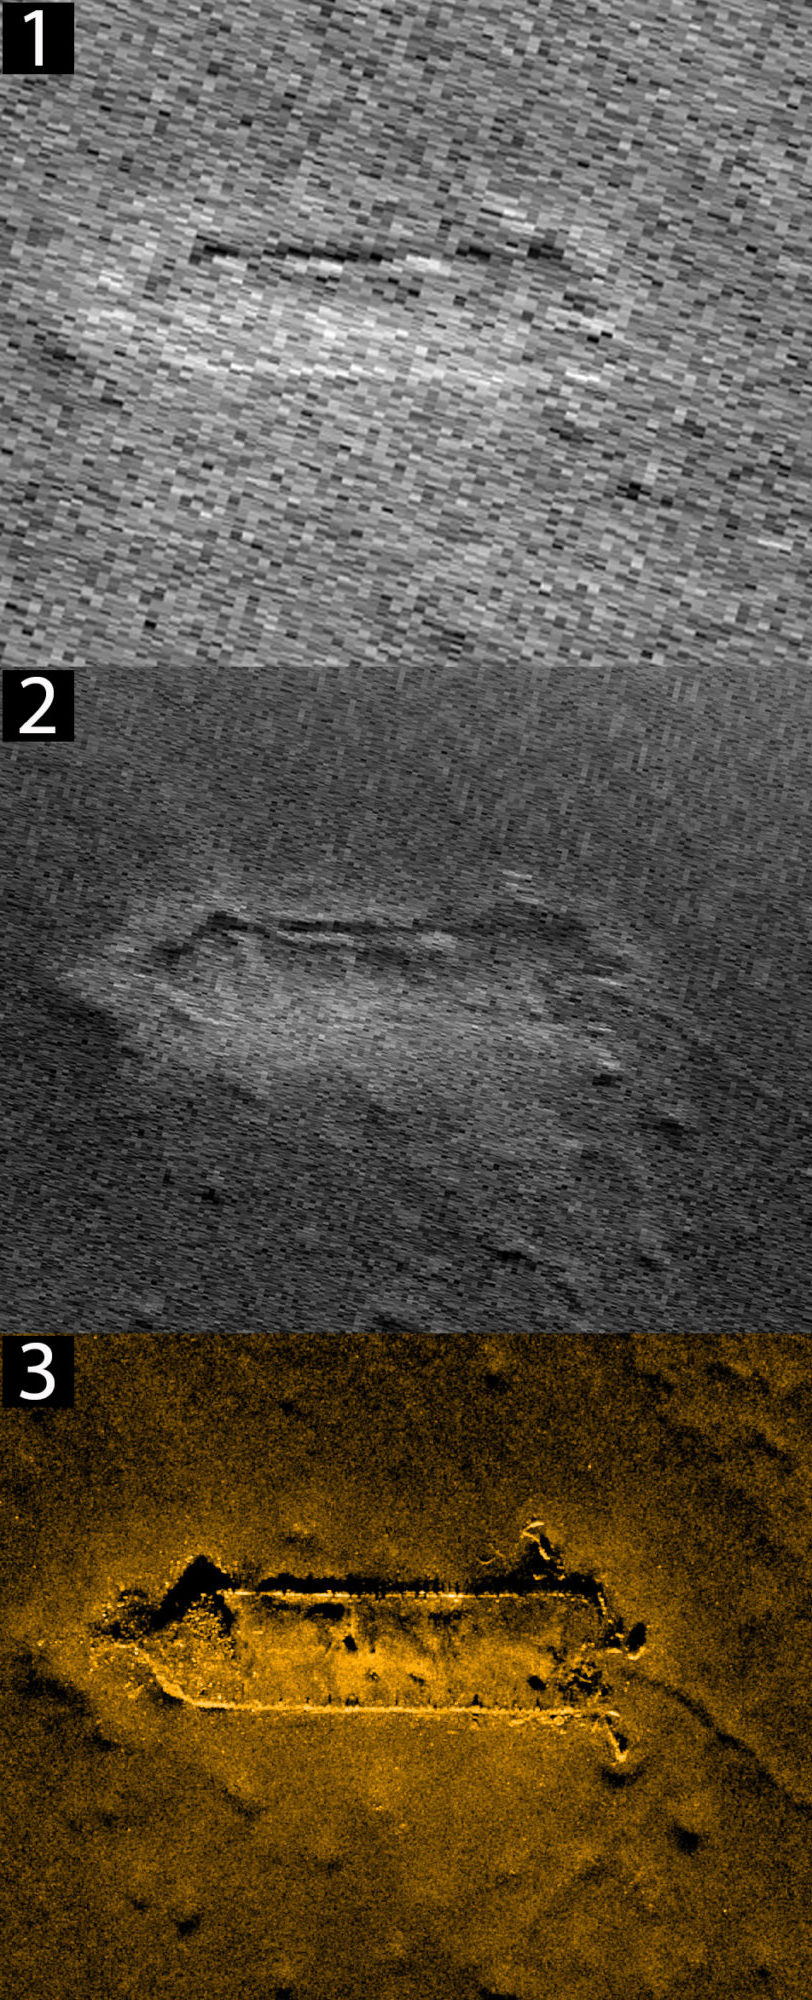 Bilde 1 og 2 viser vrak avbildet med standard sidesøkende sonar. Bilde 3 viser samme vrak avbildet med Syntetisk Apertursonar (SAS). Bilde: Forsvarets forskningsinstitutt